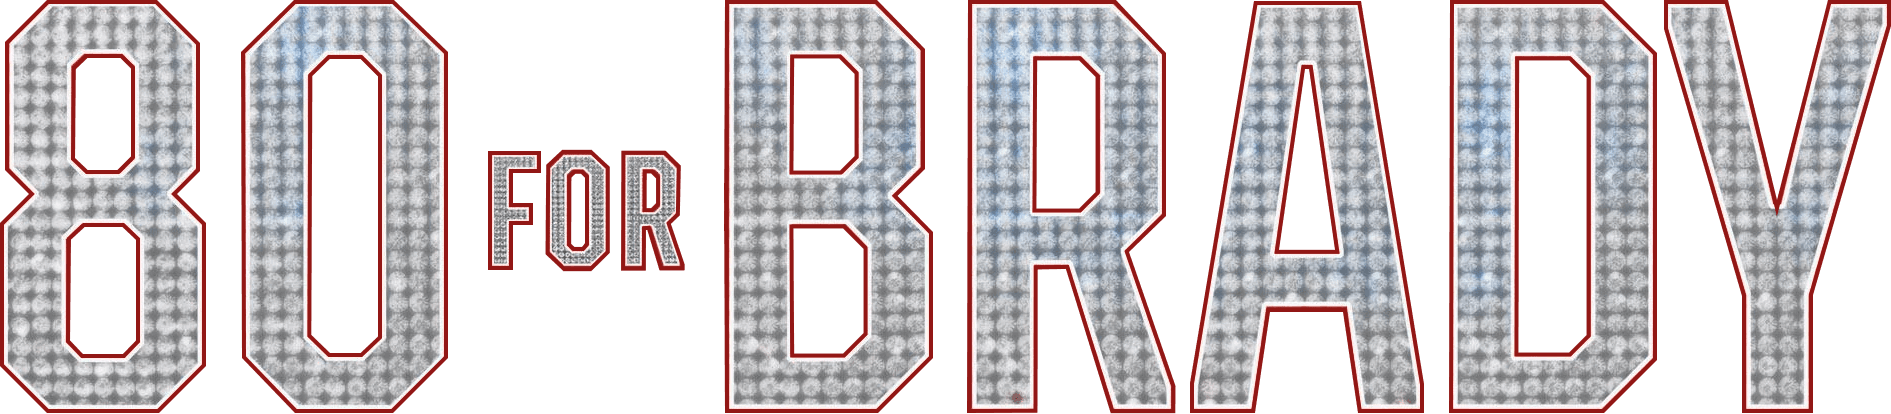 80 for Brady logo